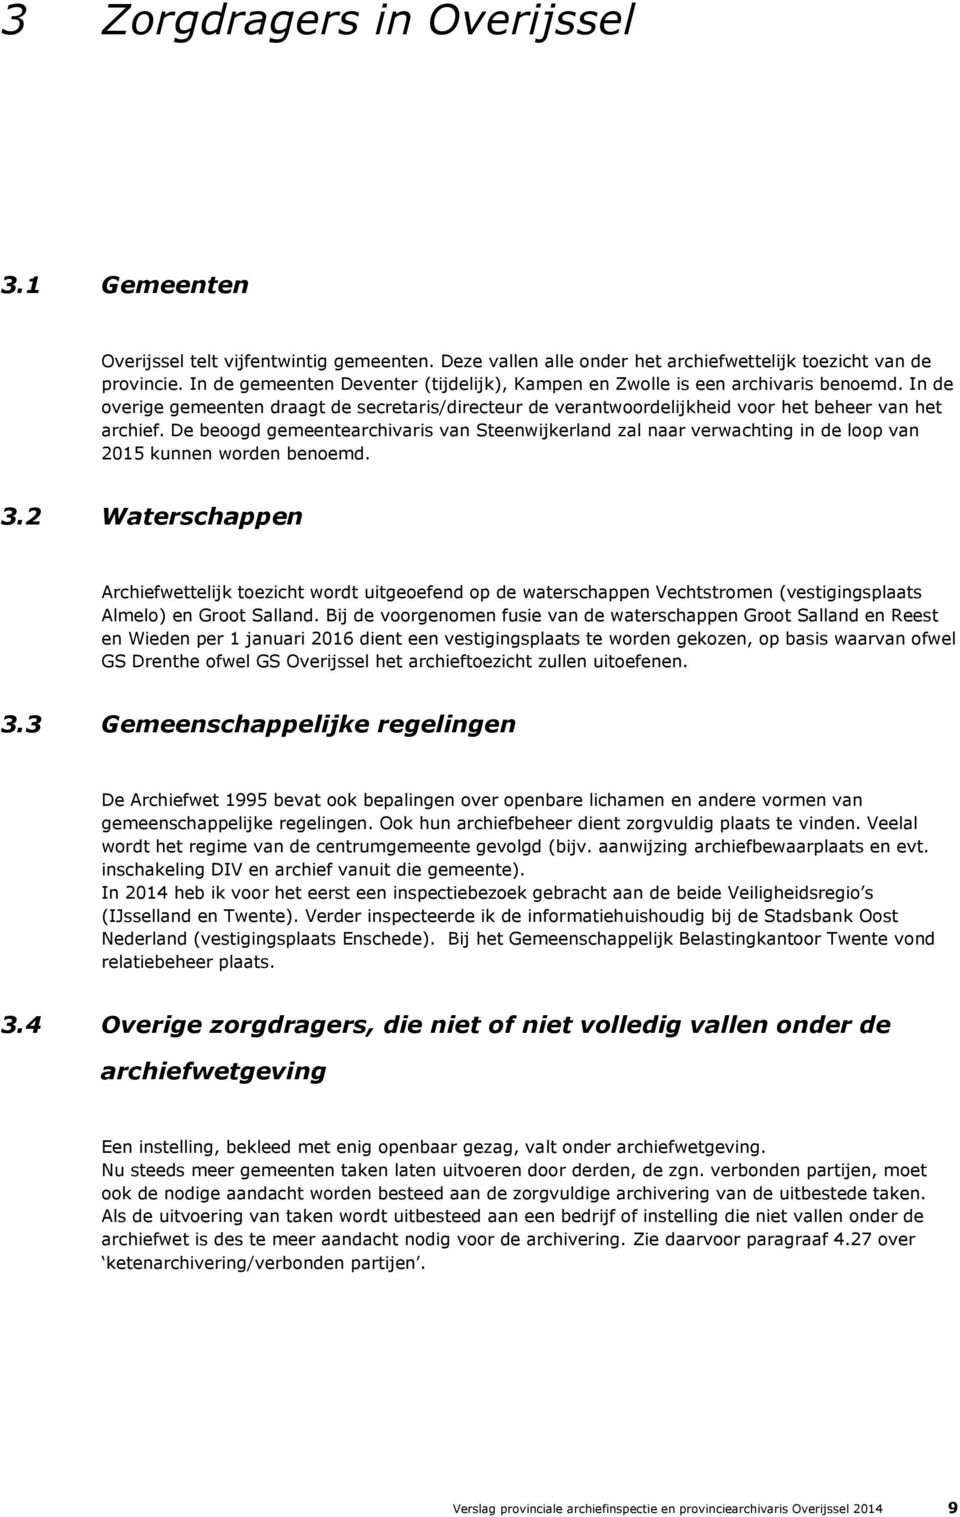 De beoogd gemeentearchivaris van Steenwijkerland zal naar verwachting in de loop van 2015 kunnen worden benoemd. 3.